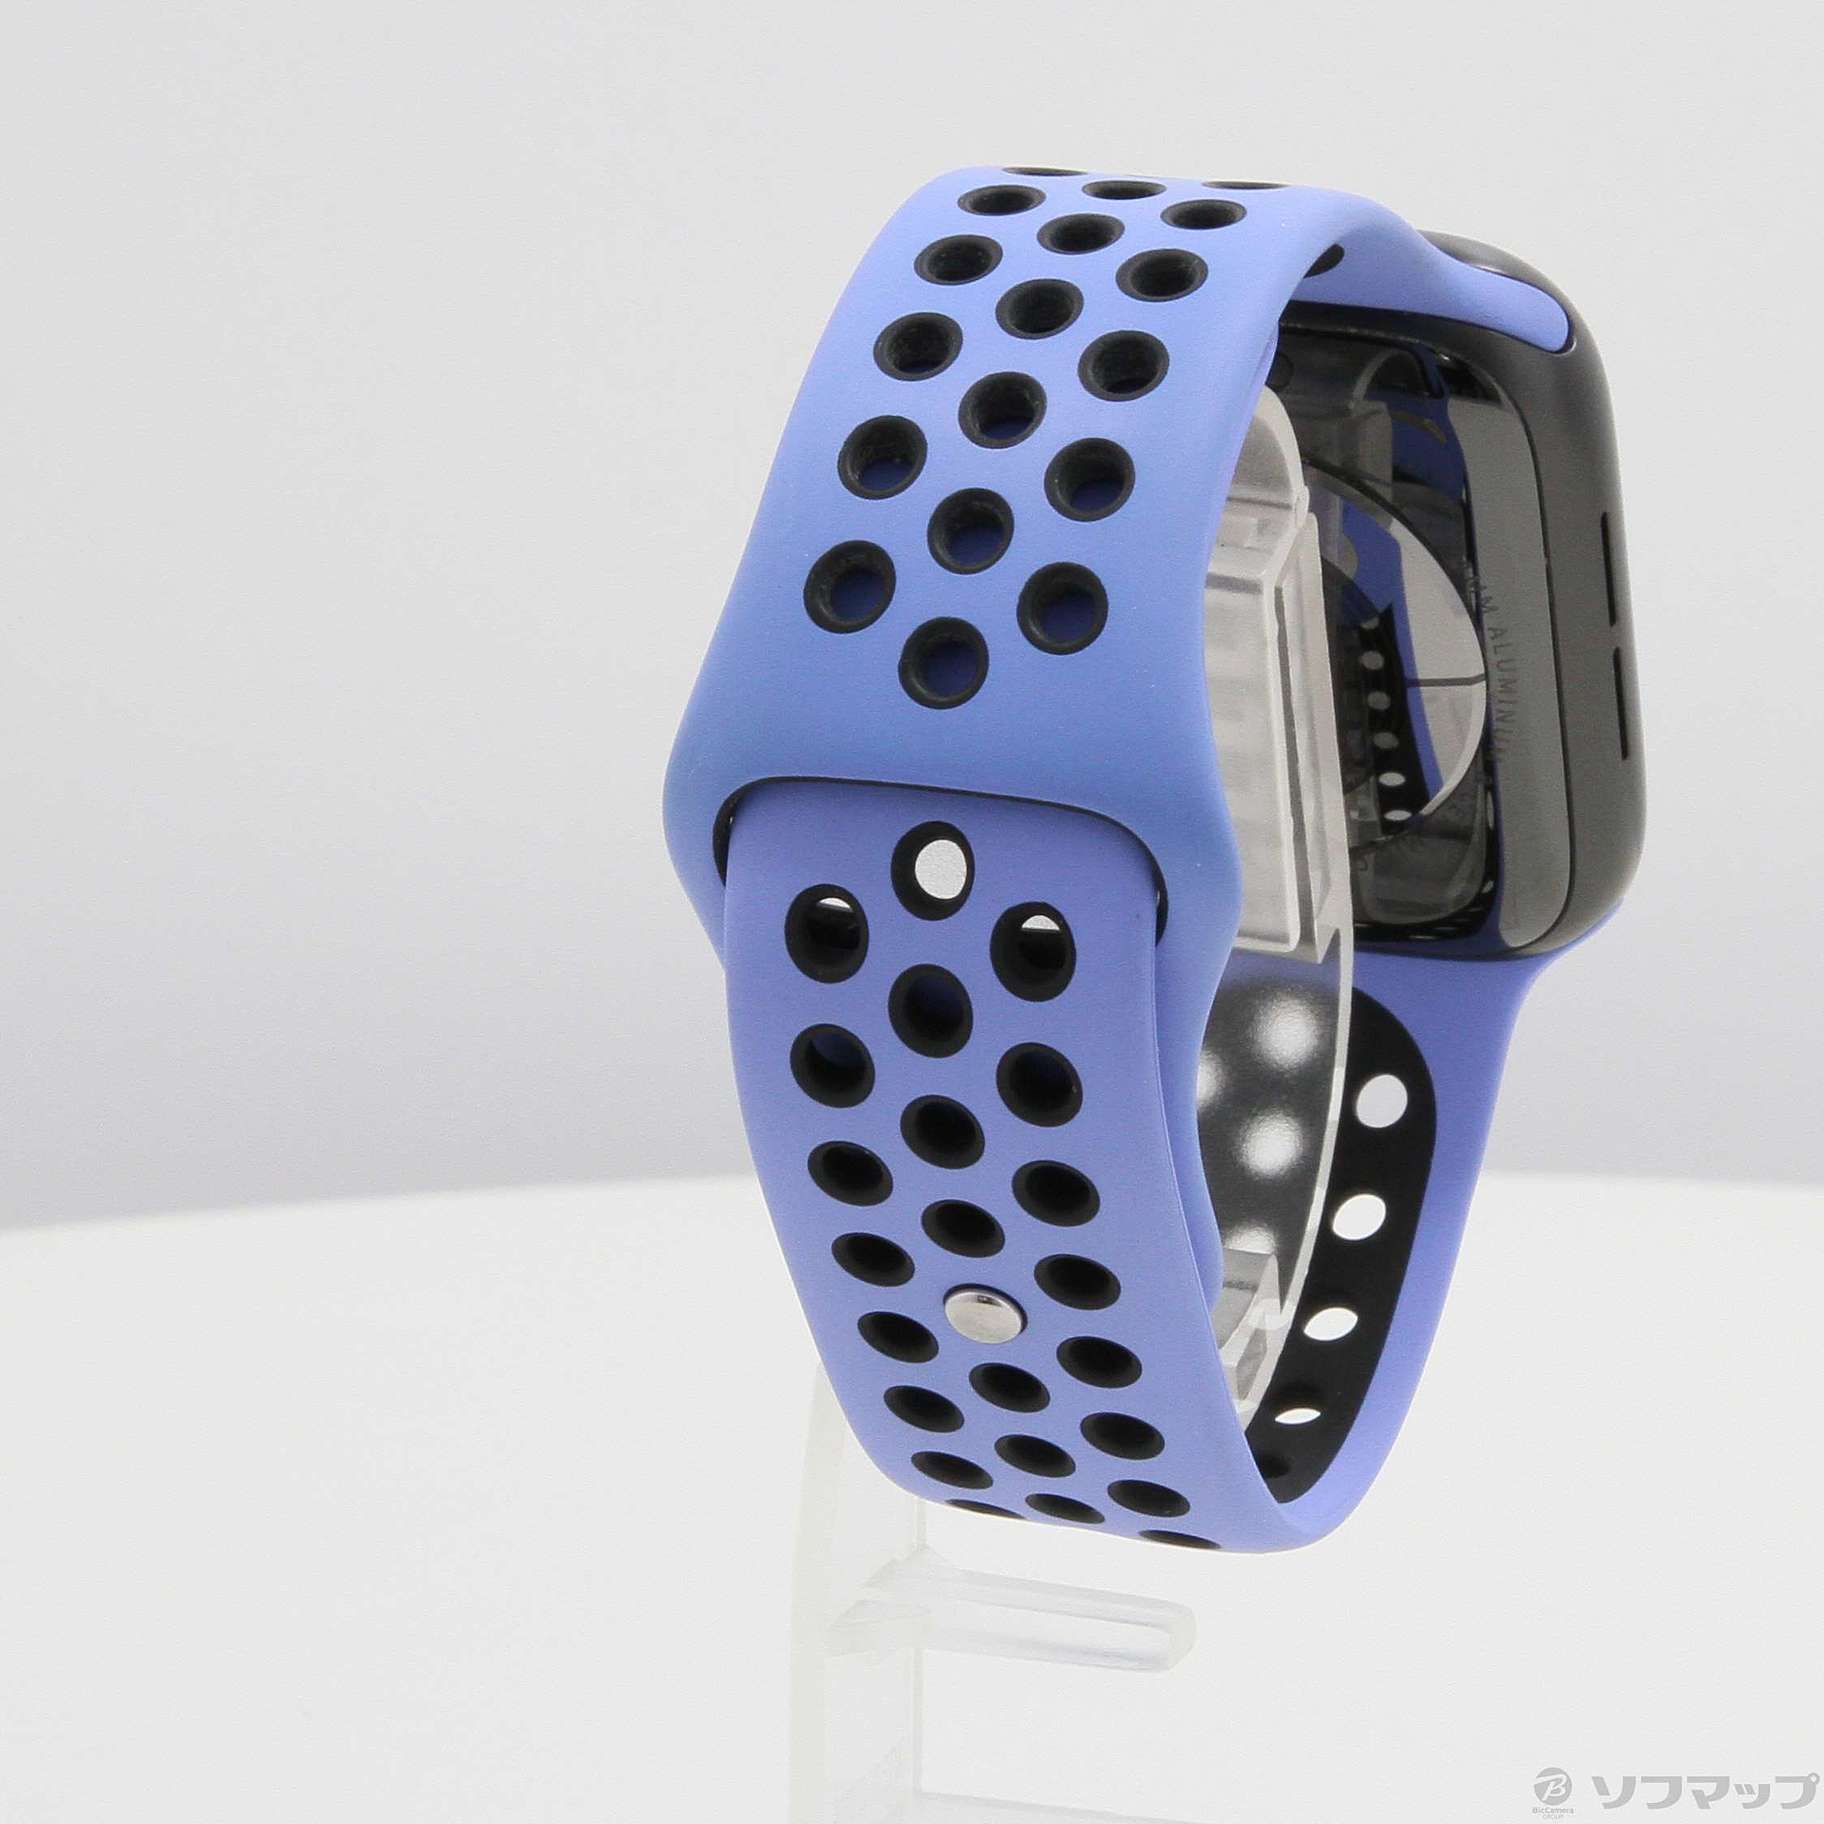 Apple Watch Series 5 Nike GPS 44mm スペースグレイアルミニウムケース ロイヤルパルス／ブラックNikeスポーツバンド